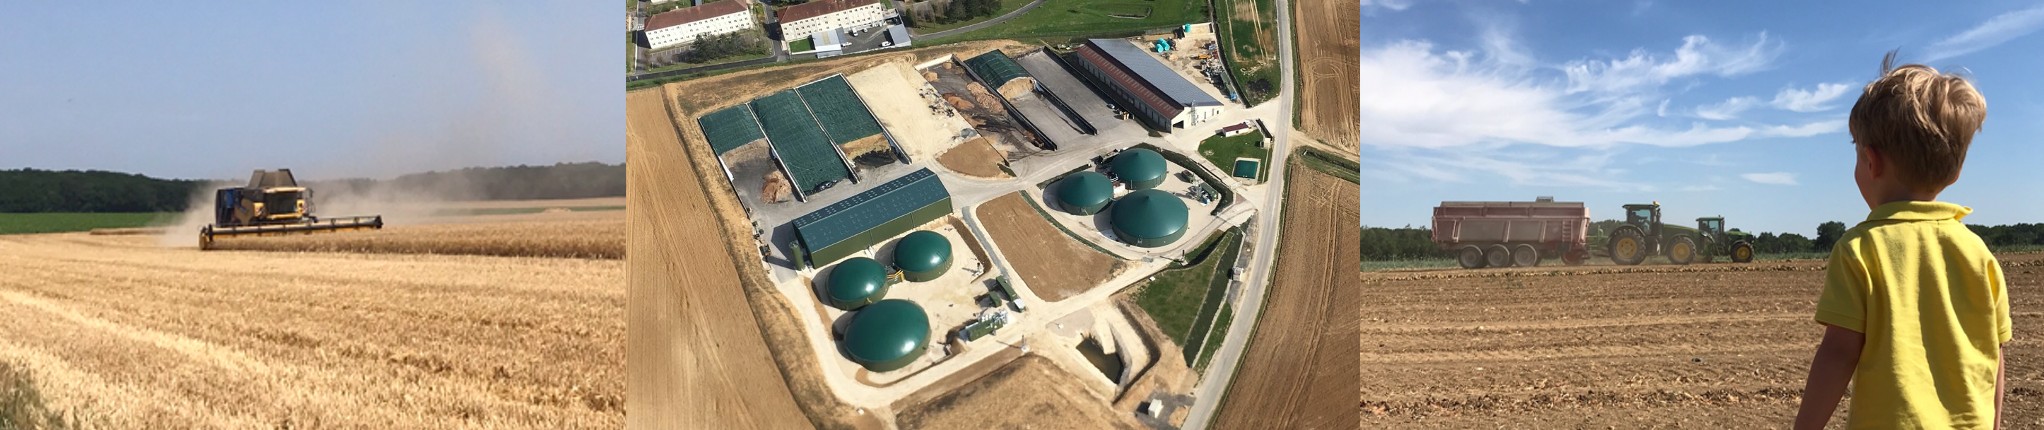 Site de méthanisation de Létang Biogaz à Sourdun